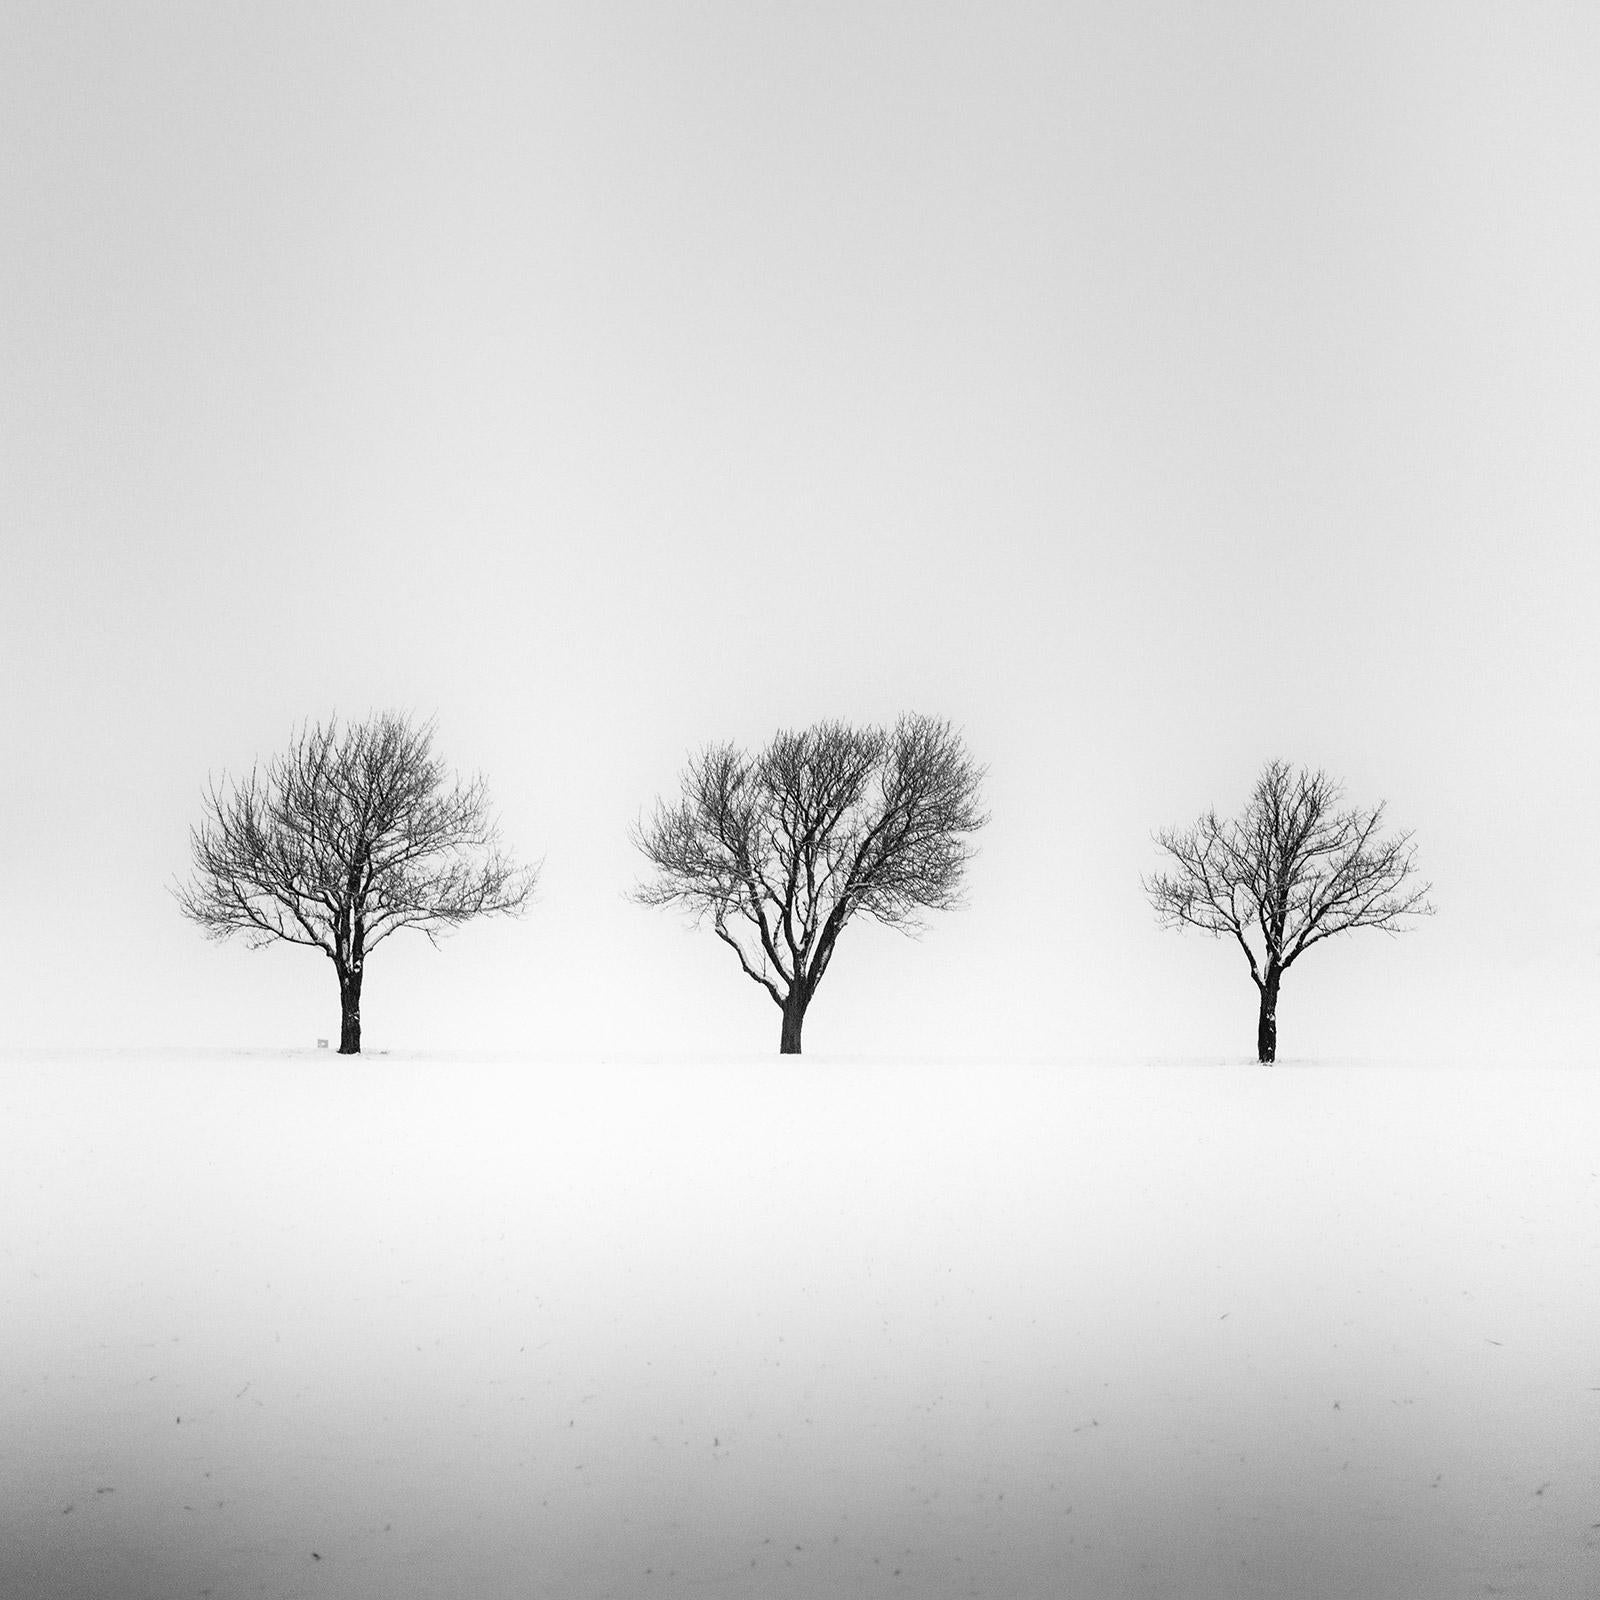 Landscape Photograph Gerald Berghammer - Arbres dans un champ enneigé, terre d'hiver, photographie en noir et blanc, art, paysage